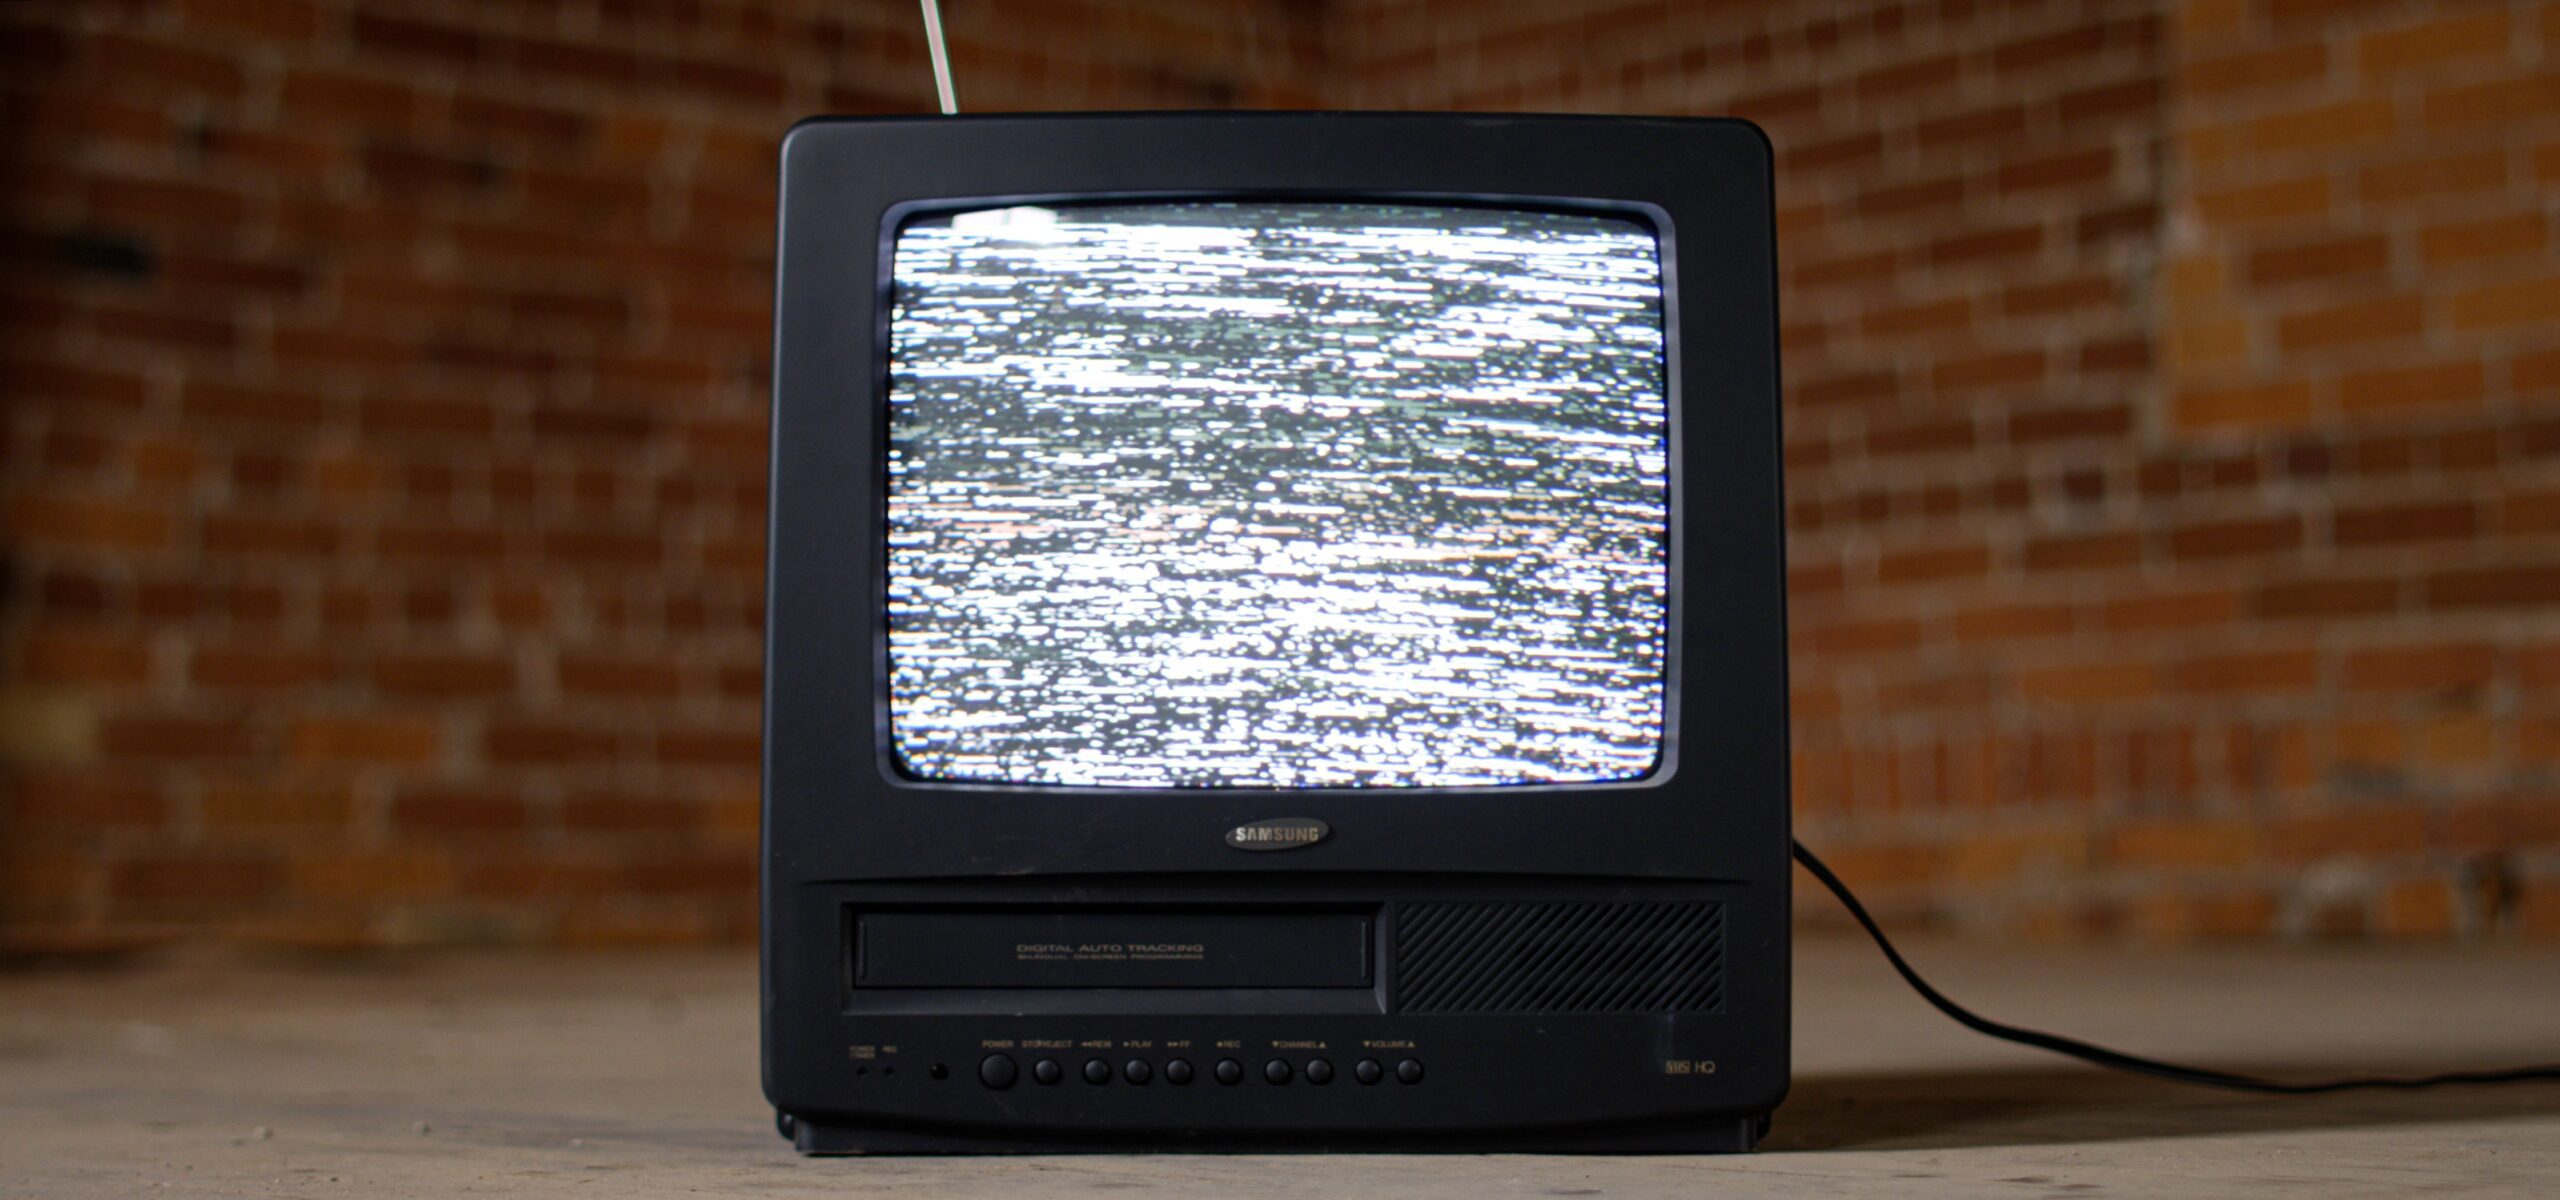 Sejarah Televisi: Dari TV Analog ke Smart TV